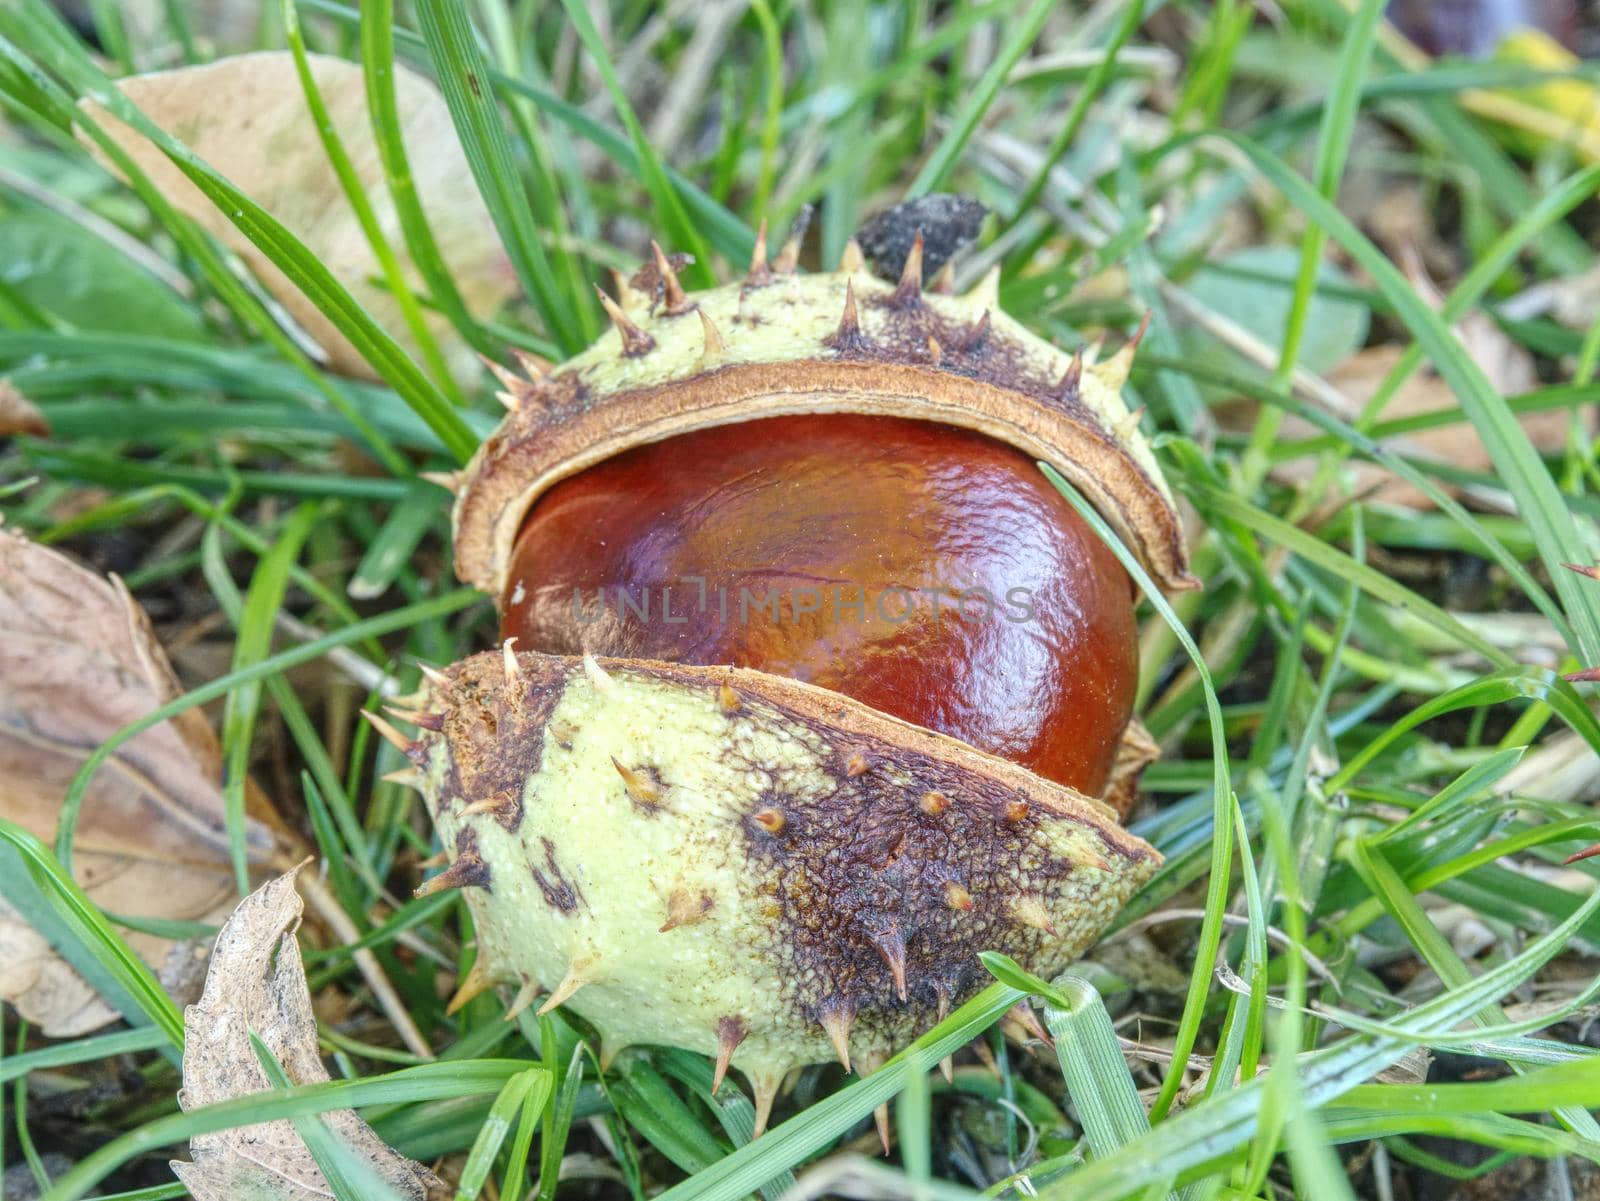 Nice fresh chestnut found in grass, symbol of beginning  autumn.  